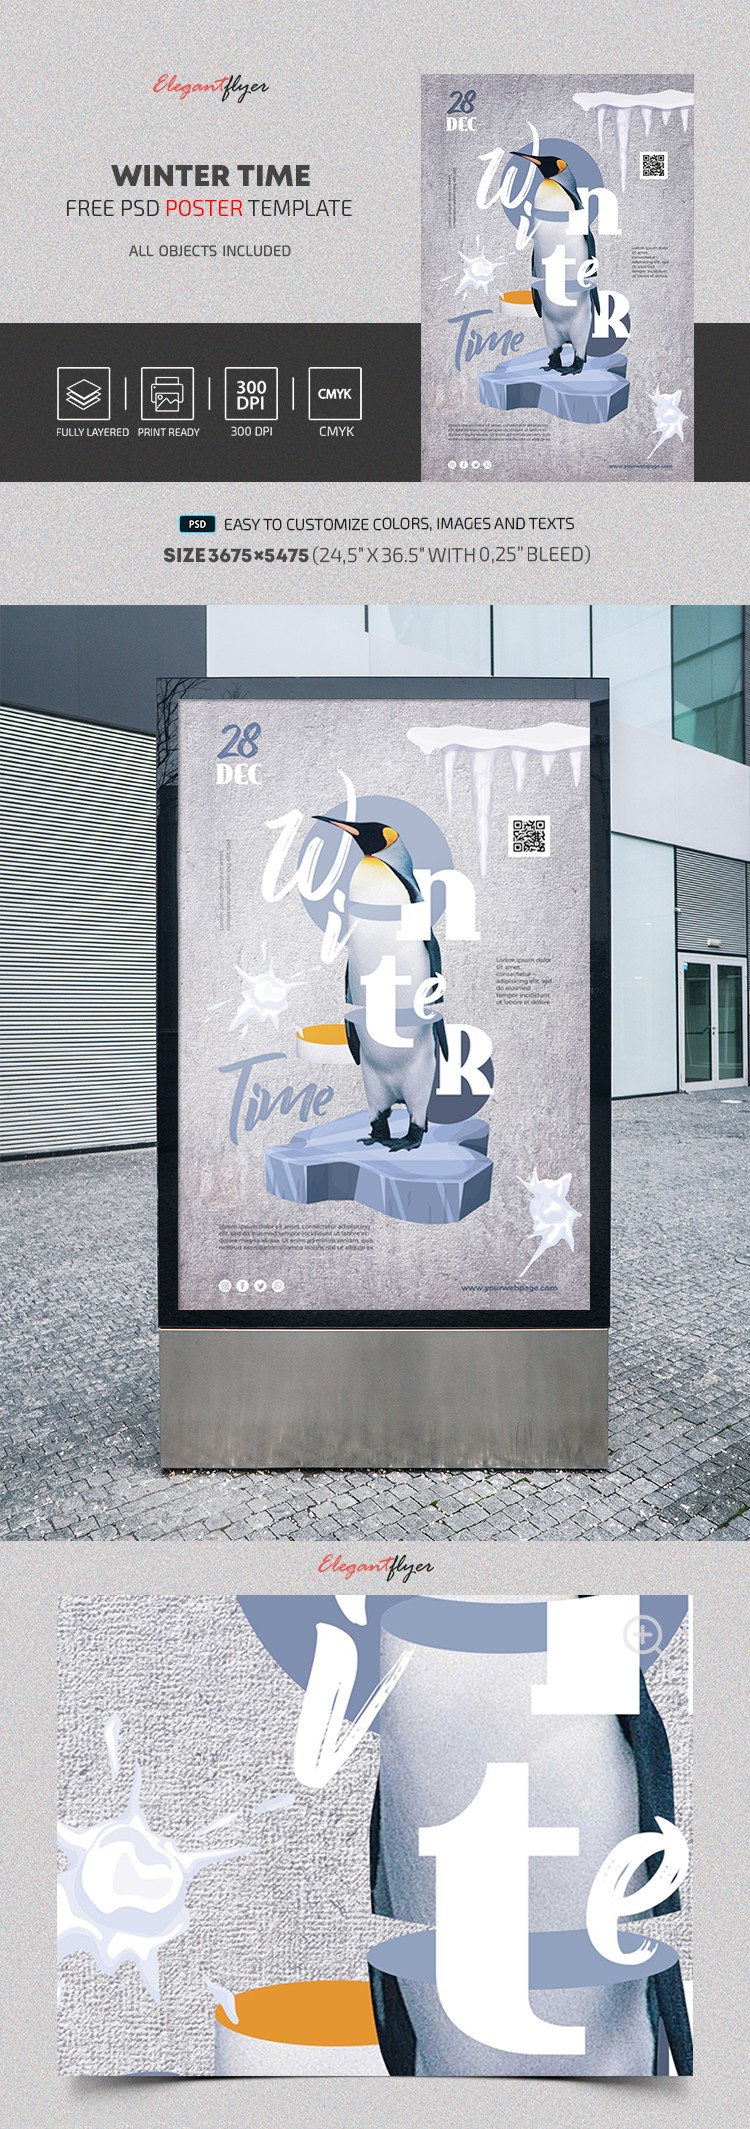 Winterzeit Poster by ElegantFlyer